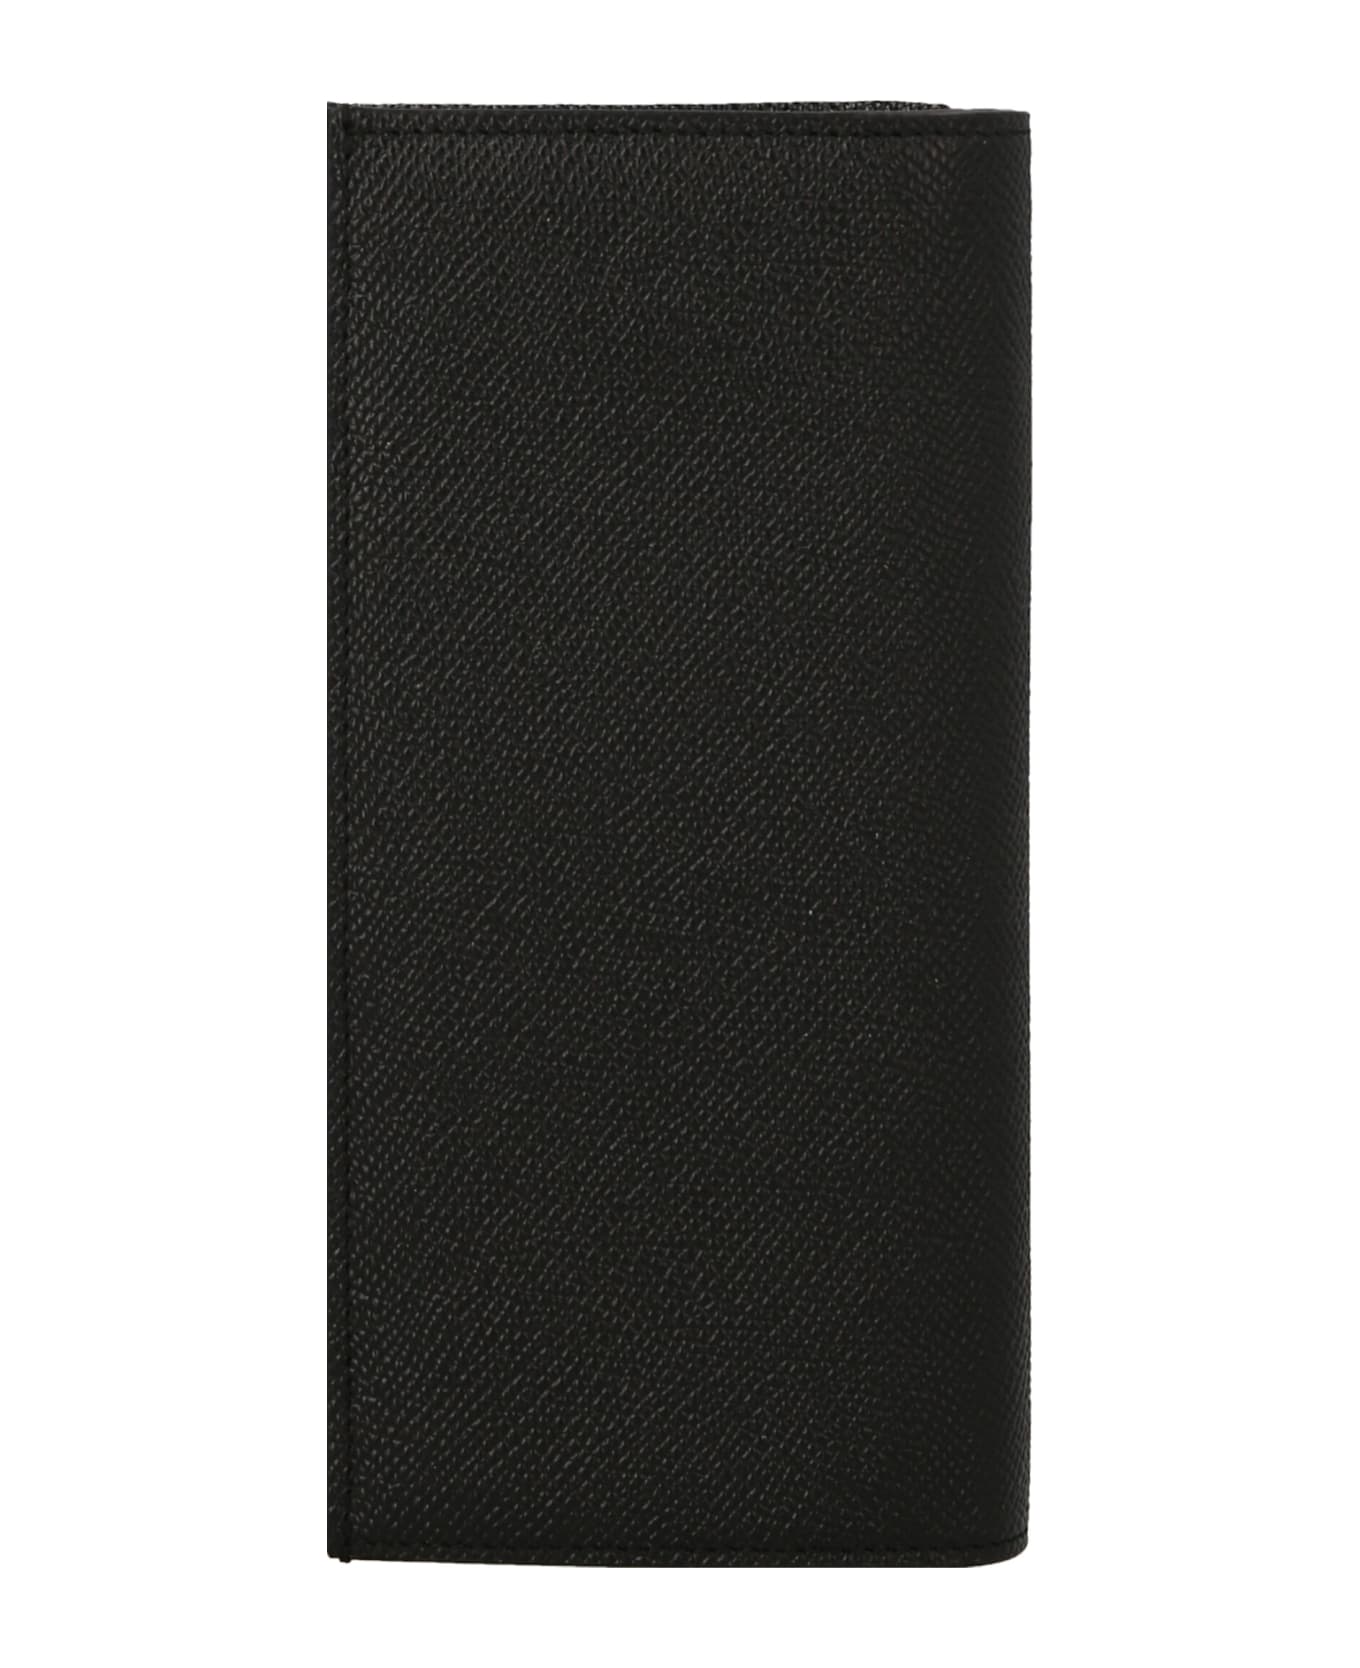 Dolce & Gabbana Vertical Wallet - NERO 財布